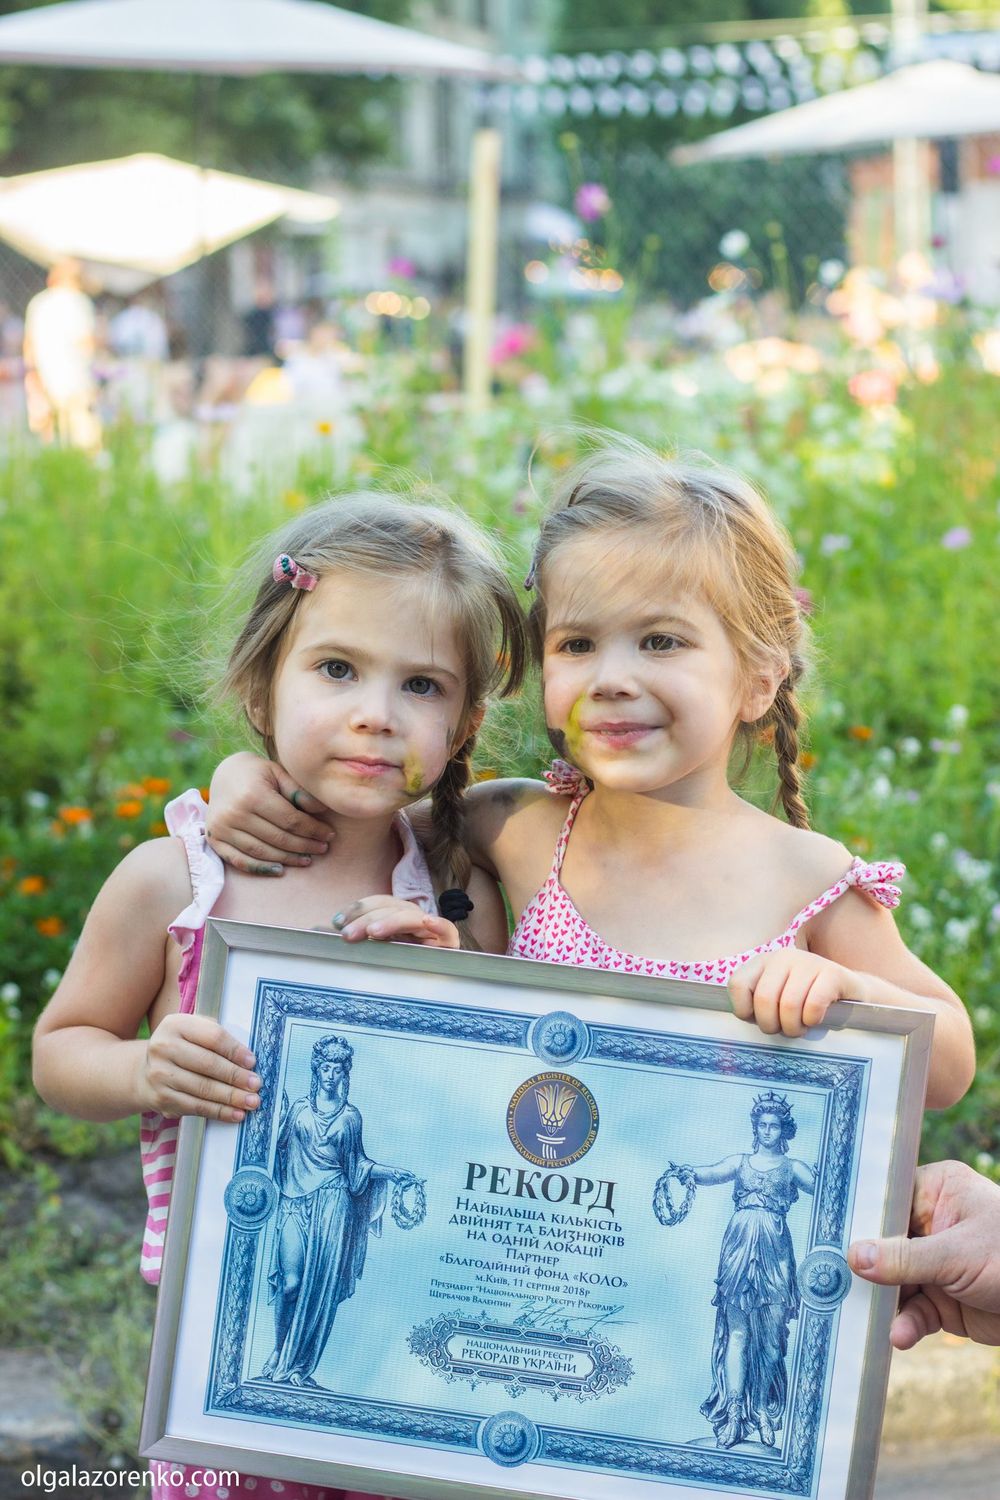 Девочки близняшки с дипломом рекорда Украины